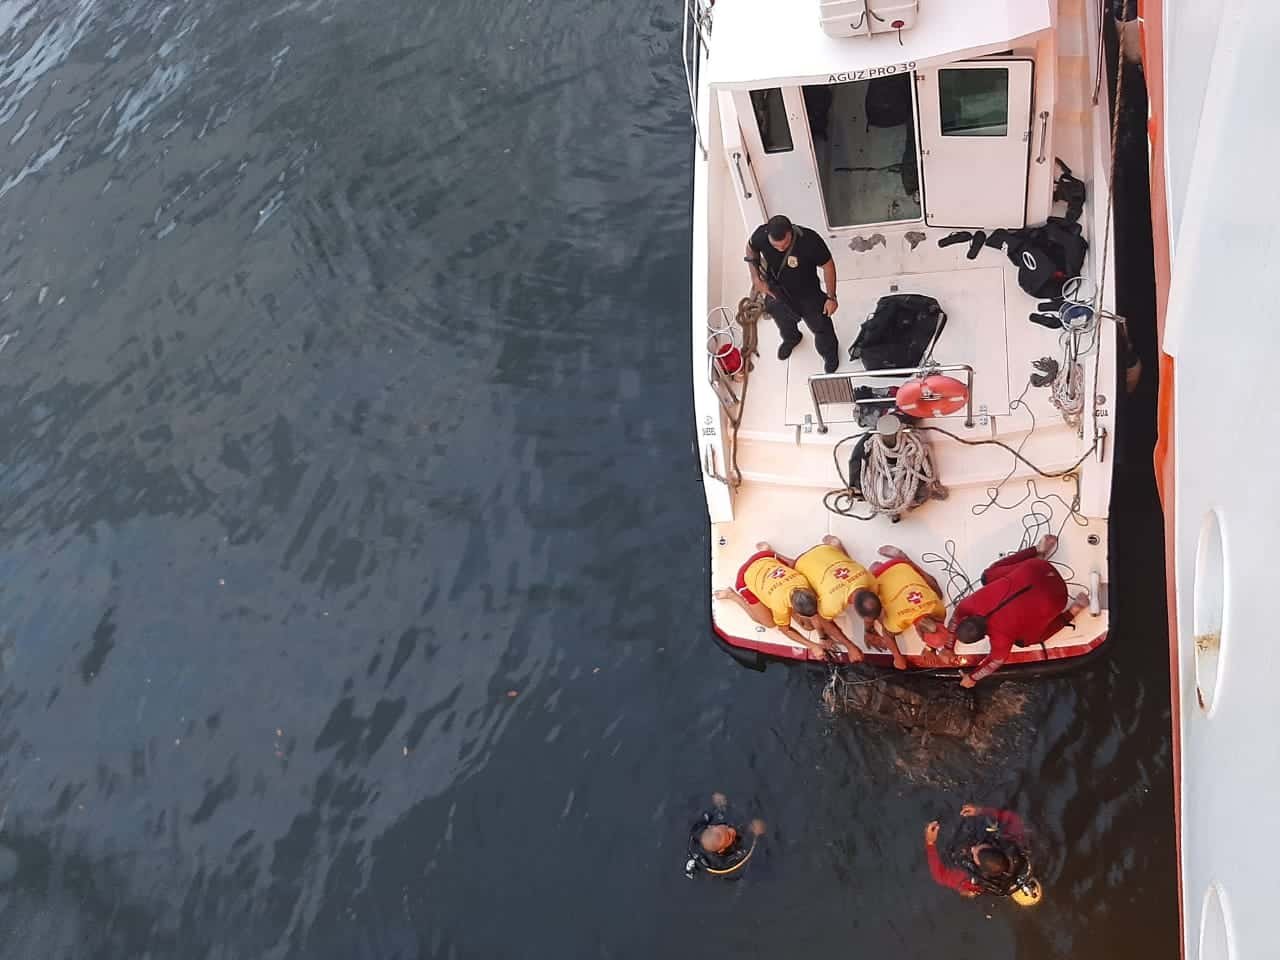 Foto vista de cima, mostra mergulhadores e agentes dentro de um barco enquanto outros mergulhadores que estão dentro  d'àgua.